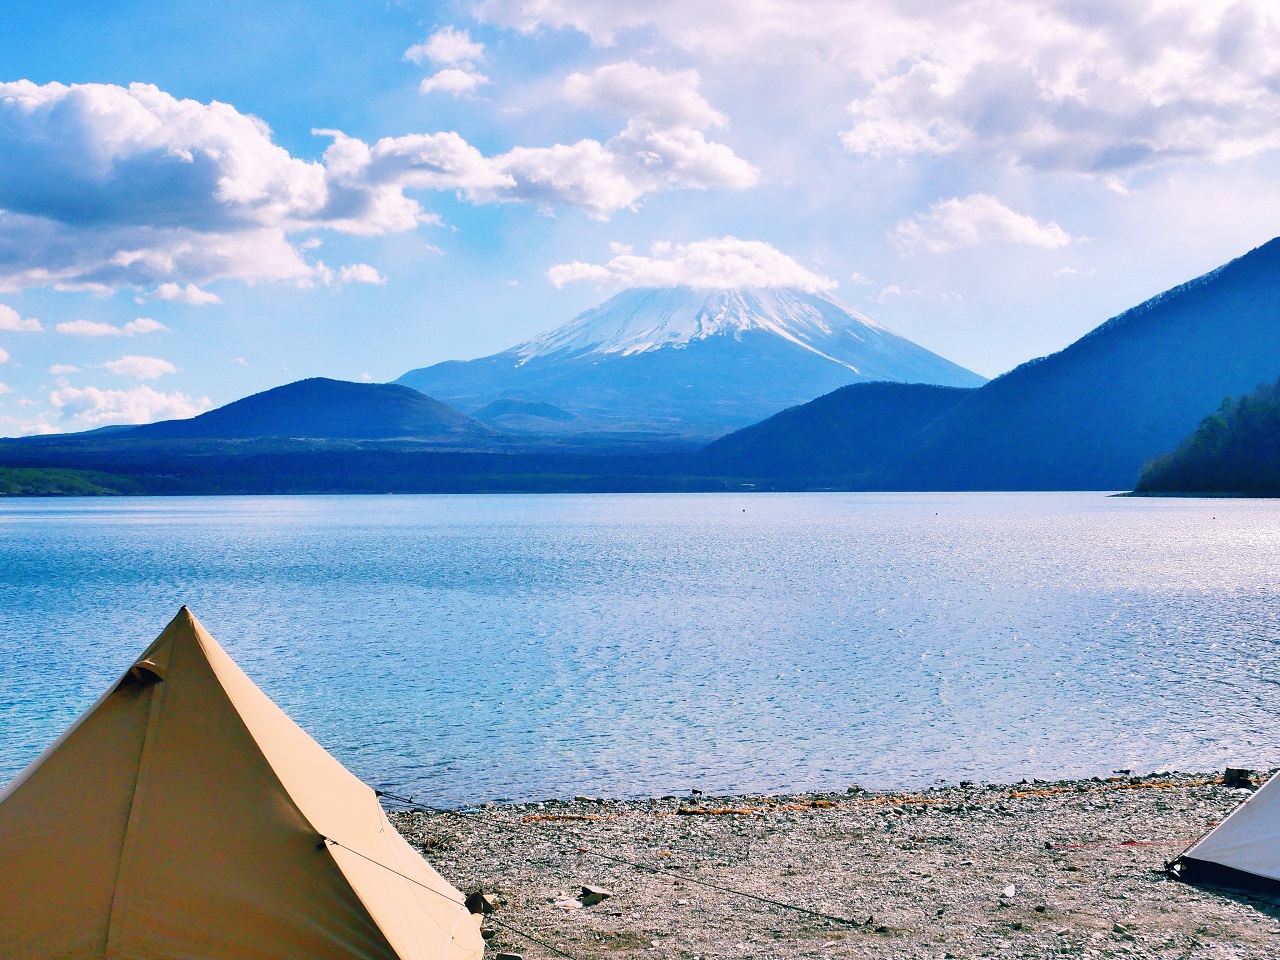  ลานตั้งแคมป์โคอัน Koan Camping Ground ยามานาชิ Mt.Fuji